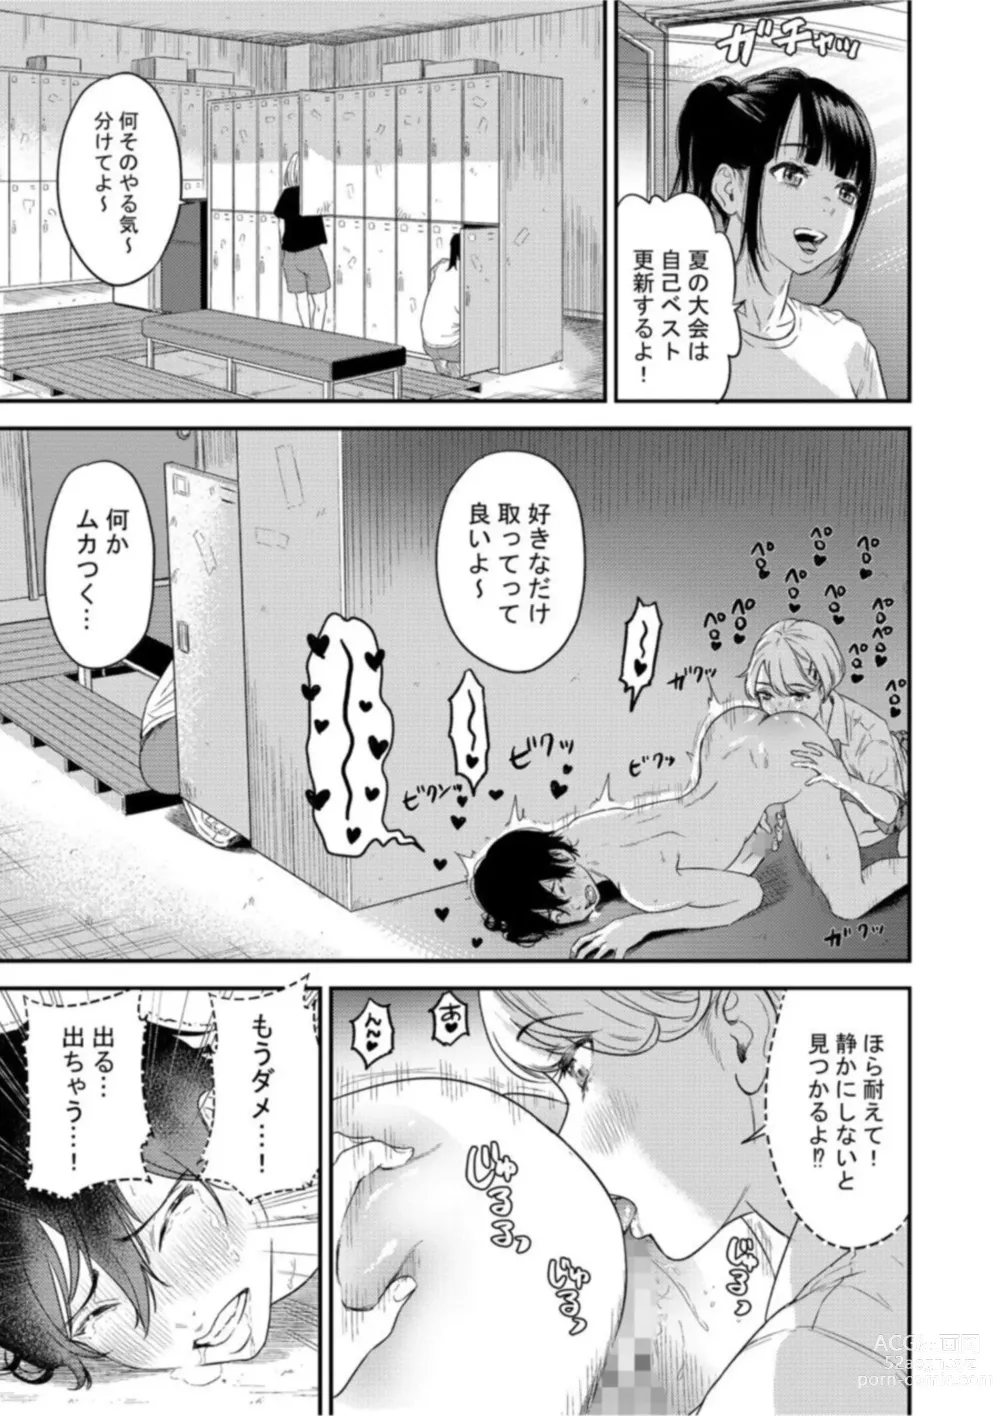 Page 15 of manga Chijo Rizumu 1